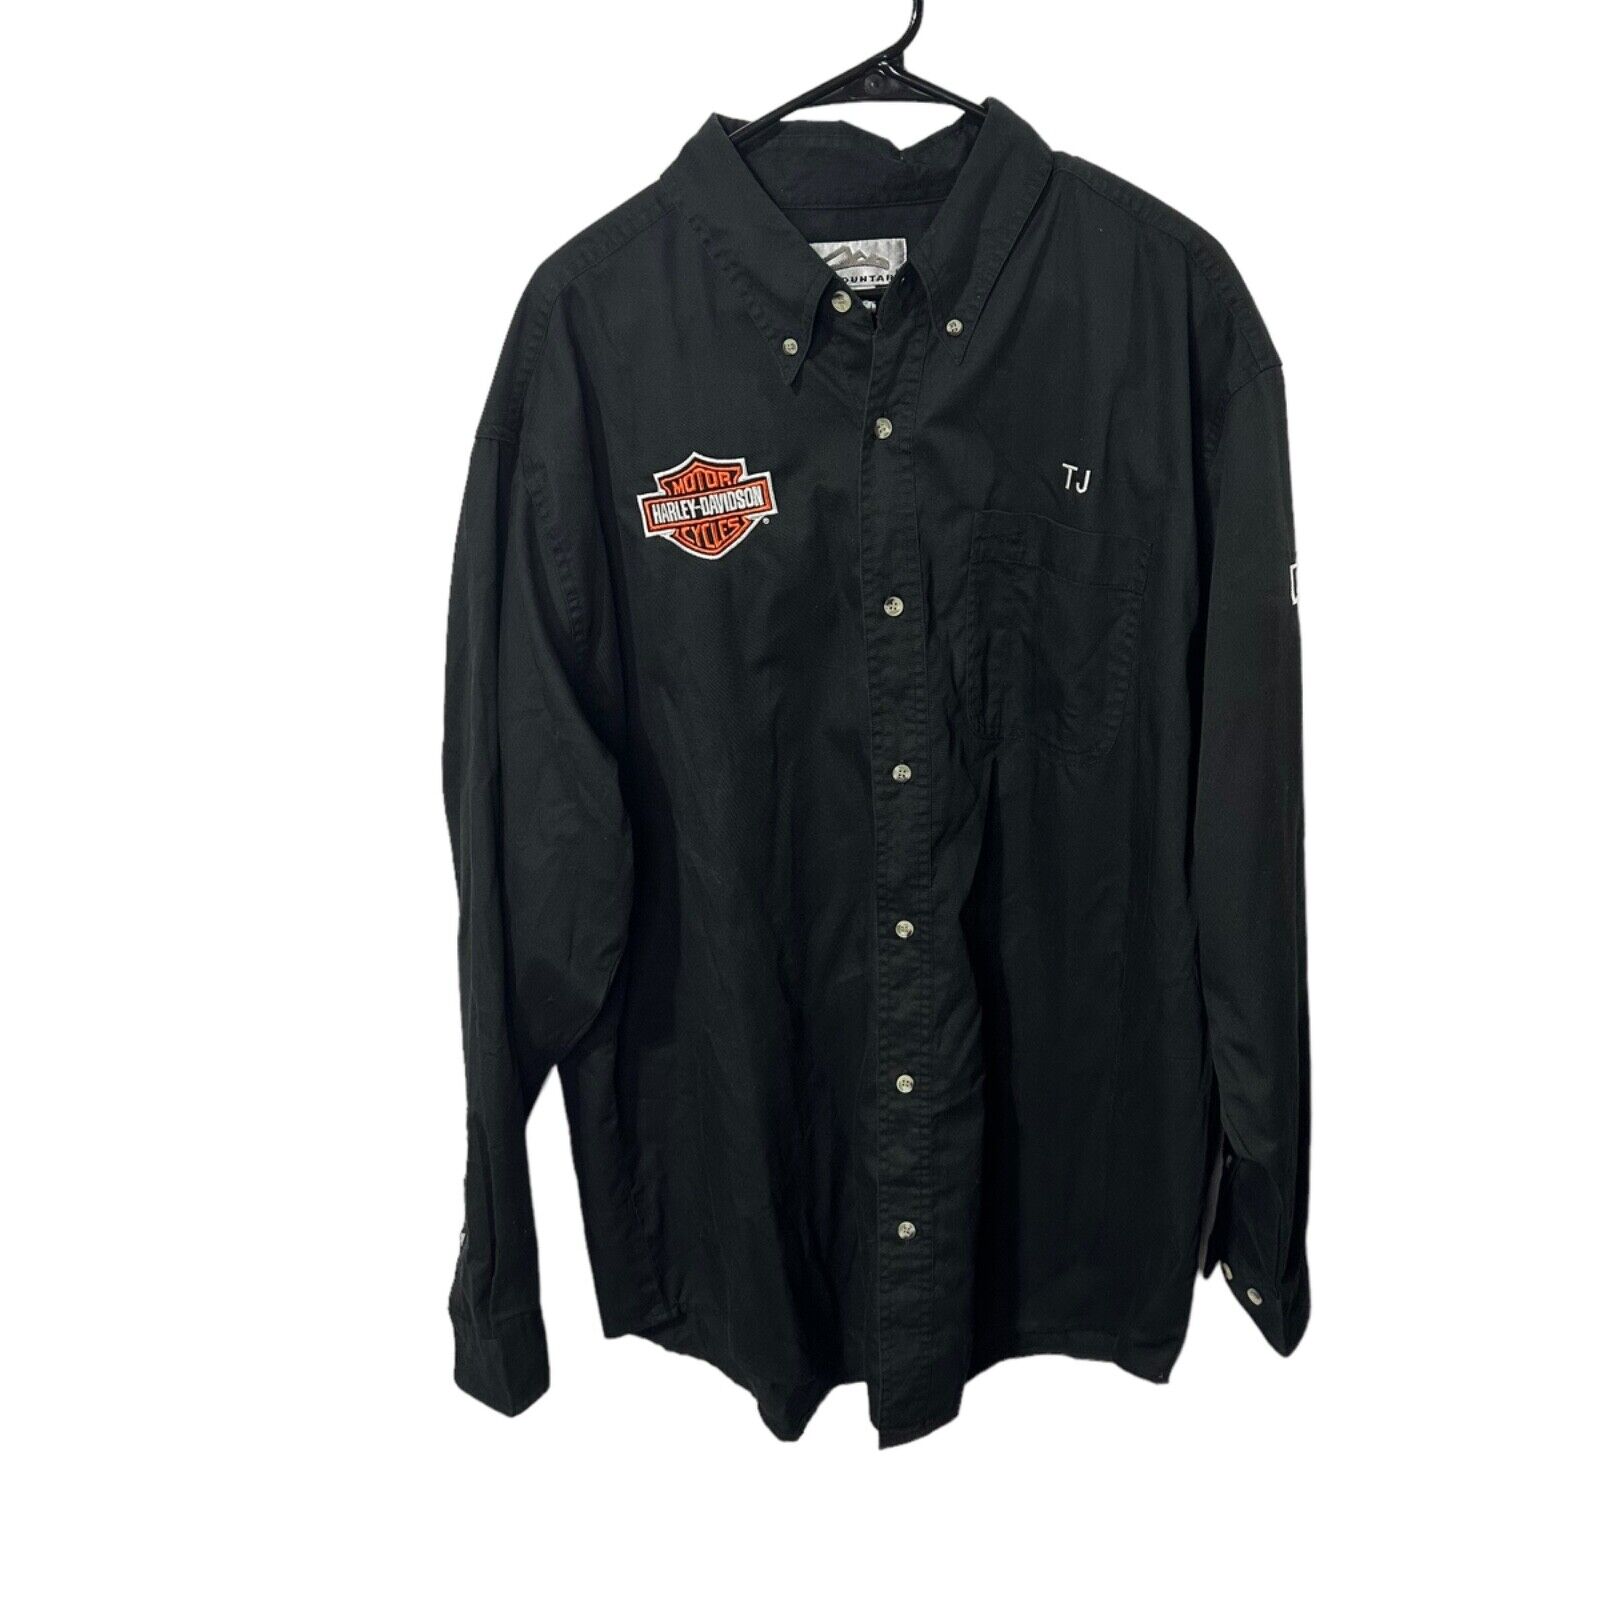 Harley Davidson Men's Service Uniform Button-Up Black Size XL - Z&M HD - Name TJ